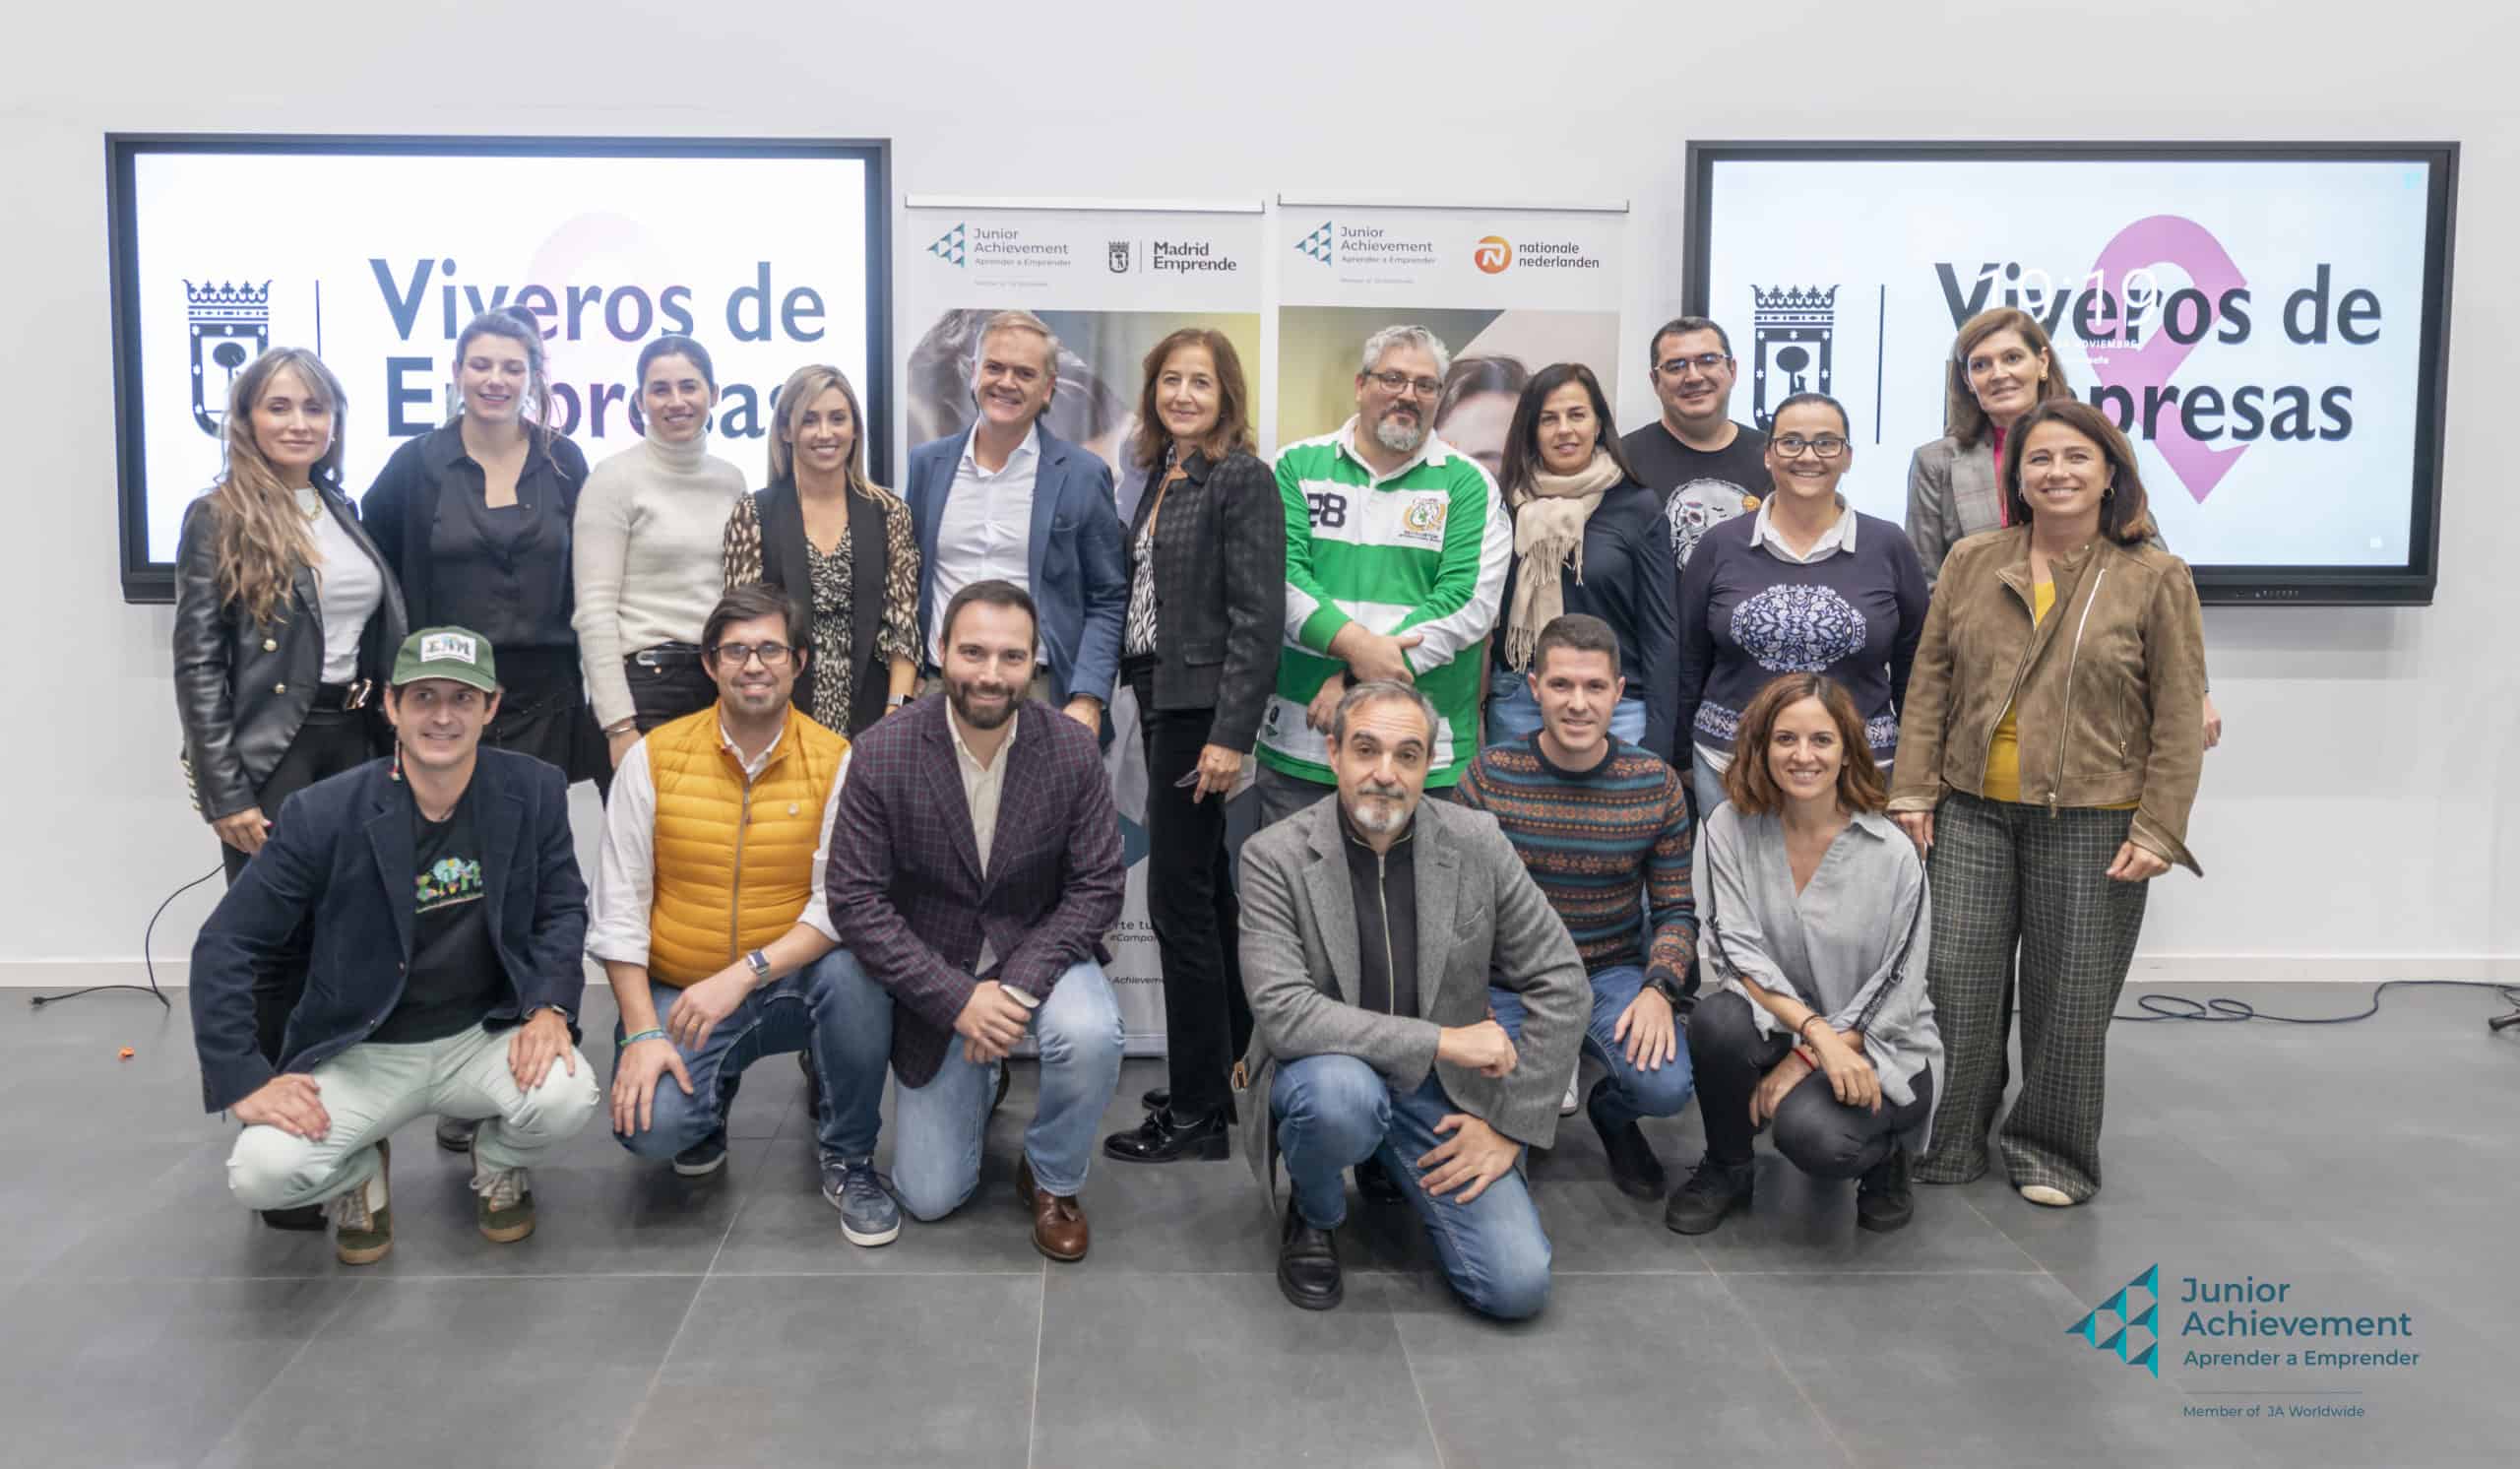 El Ayuntamiento de Madrid, Nationale-Nederlanden y la Fundación Junior Achievement promueven el emprendimiento entre jóvenes de diferentes centros educativos a través de un campamento de innovación